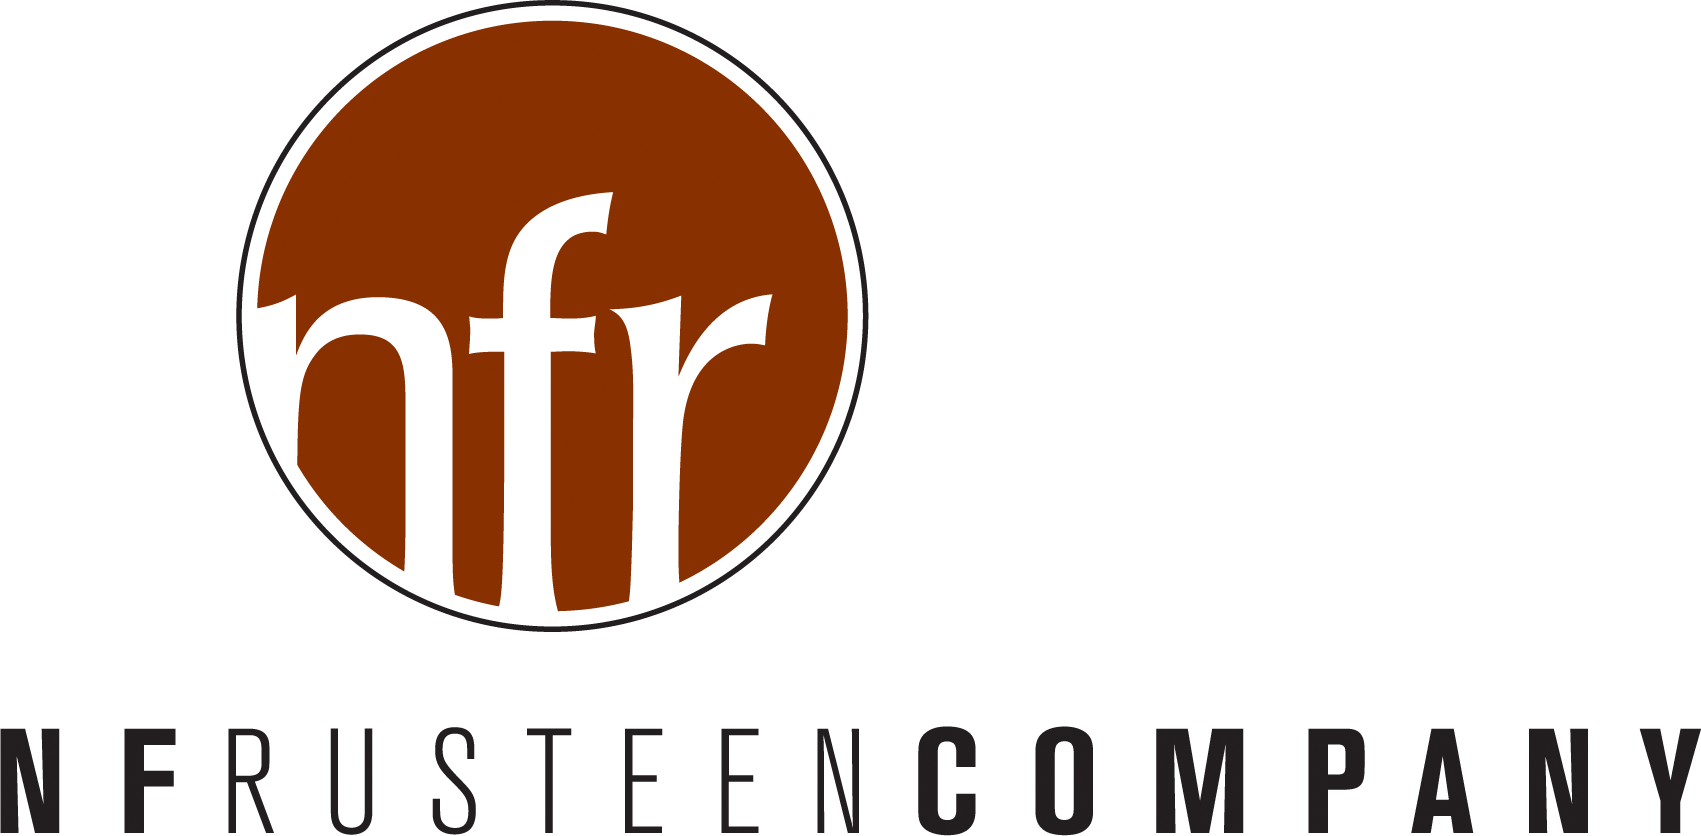 N F Rusteen Company